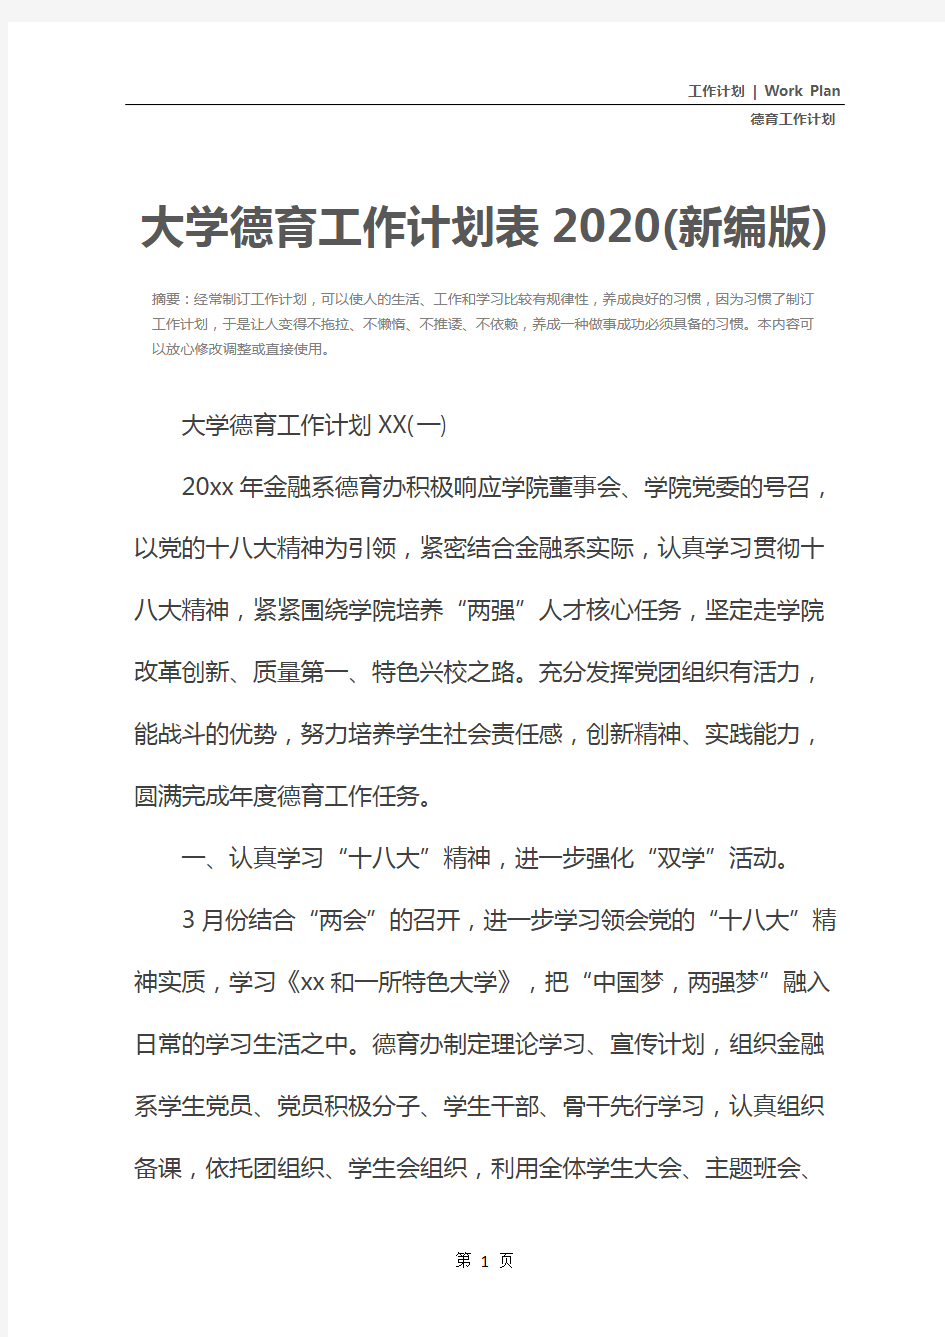 大学德育工作计划表2020(新编版)